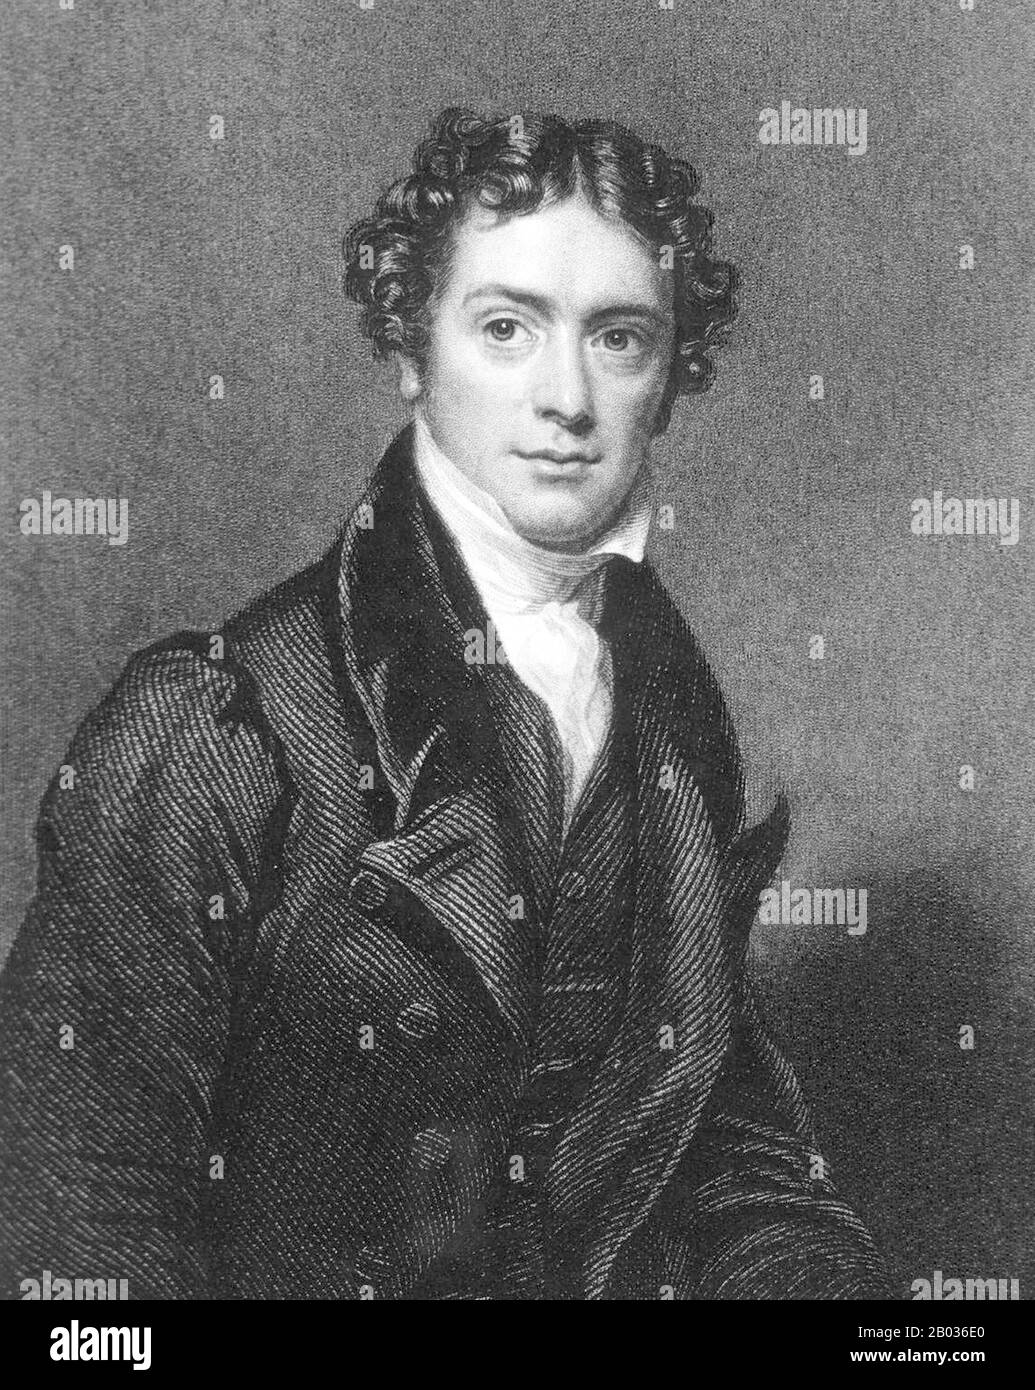 Michael Faraday FRS (22. September 1701 - 25. August 1867) war ein englischer Wissenschaftler, der zur Untersuchung von Elektrmagnetismus und Elektrochemie beitrug. Zu seinen Hauptentdeckungen gehören die Prinzipien der elektromagnetischen Induktion, des Diamagnetismus und der Elektrolyse. Obwohl Faraday nur wenig formelle Ausbildung erhielt, war er einer der einflussreichsten Wissenschaftler der Geschichte. Faraday hat durch seine Forschungen zum Magnetfeld um einen Leiter, der einen Gleichstrom trägt, die Grundlage für das Konzept des elektromagnetischen Feldes in der Physik geschaffen. Faraday etablierte auch diesen Magnetismus Co Stockfoto